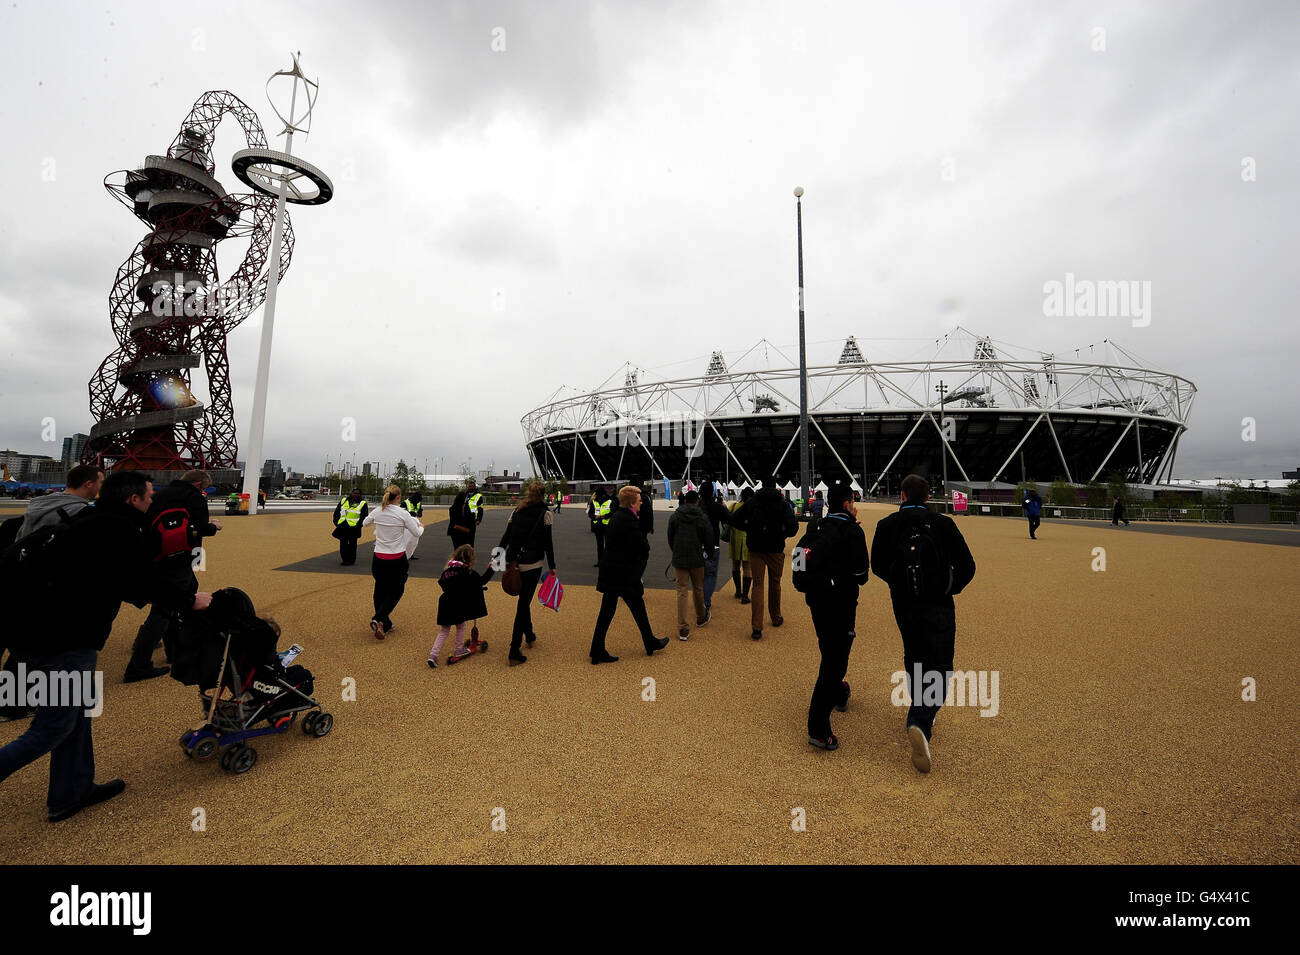 Les fans se rendent au stade olympique avant les championnats sportifs des universités et collèges du stade olympique de Londres. Banque D'Images